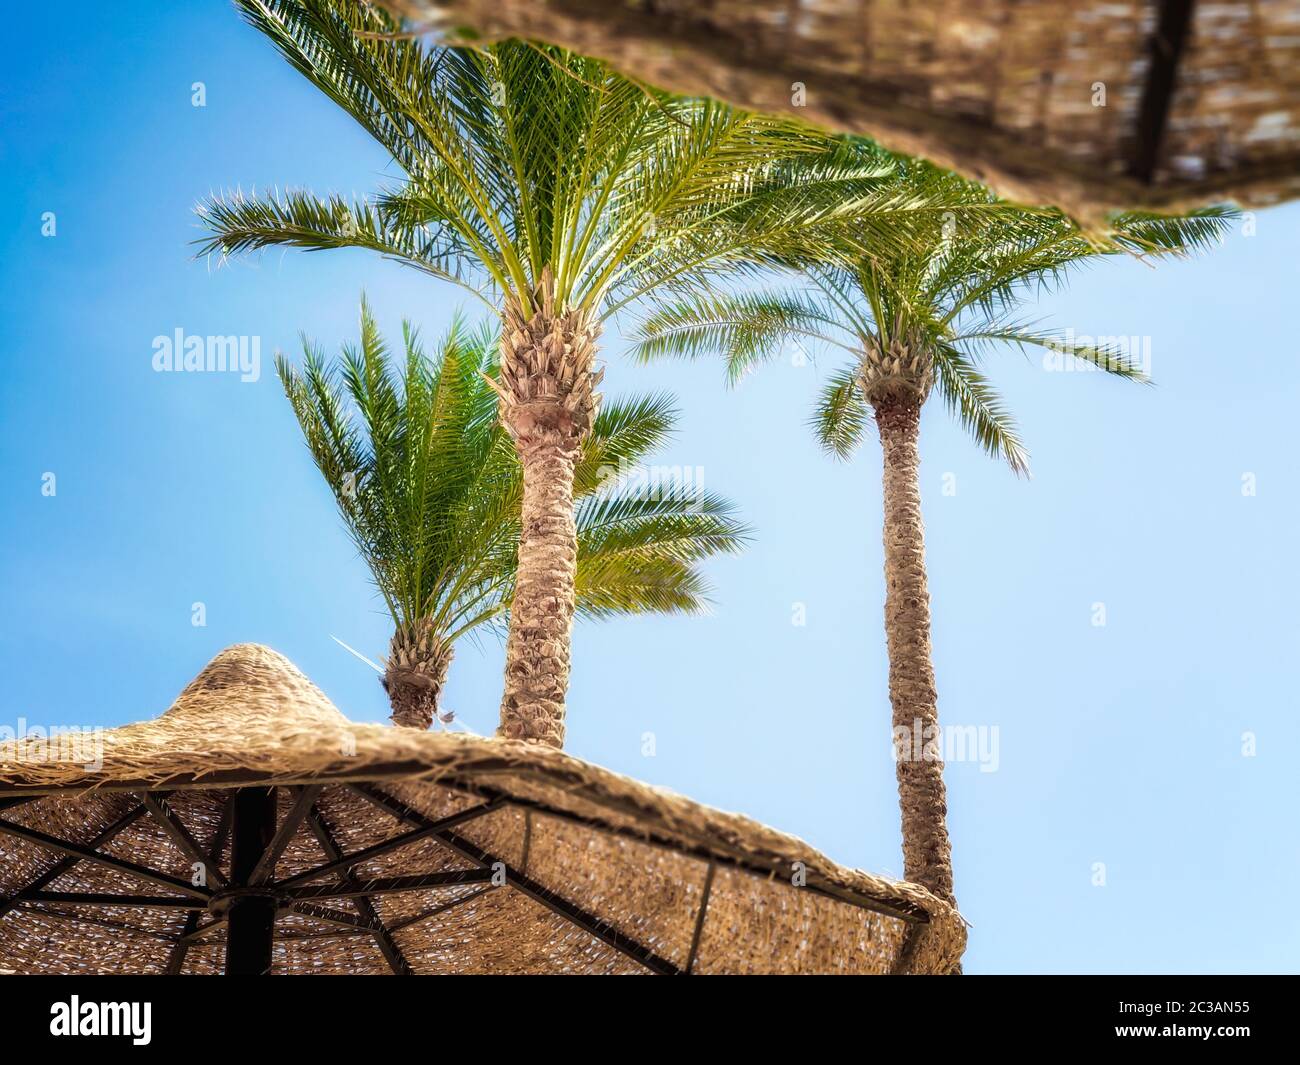 Sfondo tropicale senza persone con palme e ombrelloni in legno a Sharm El Sheikh Foto Stock